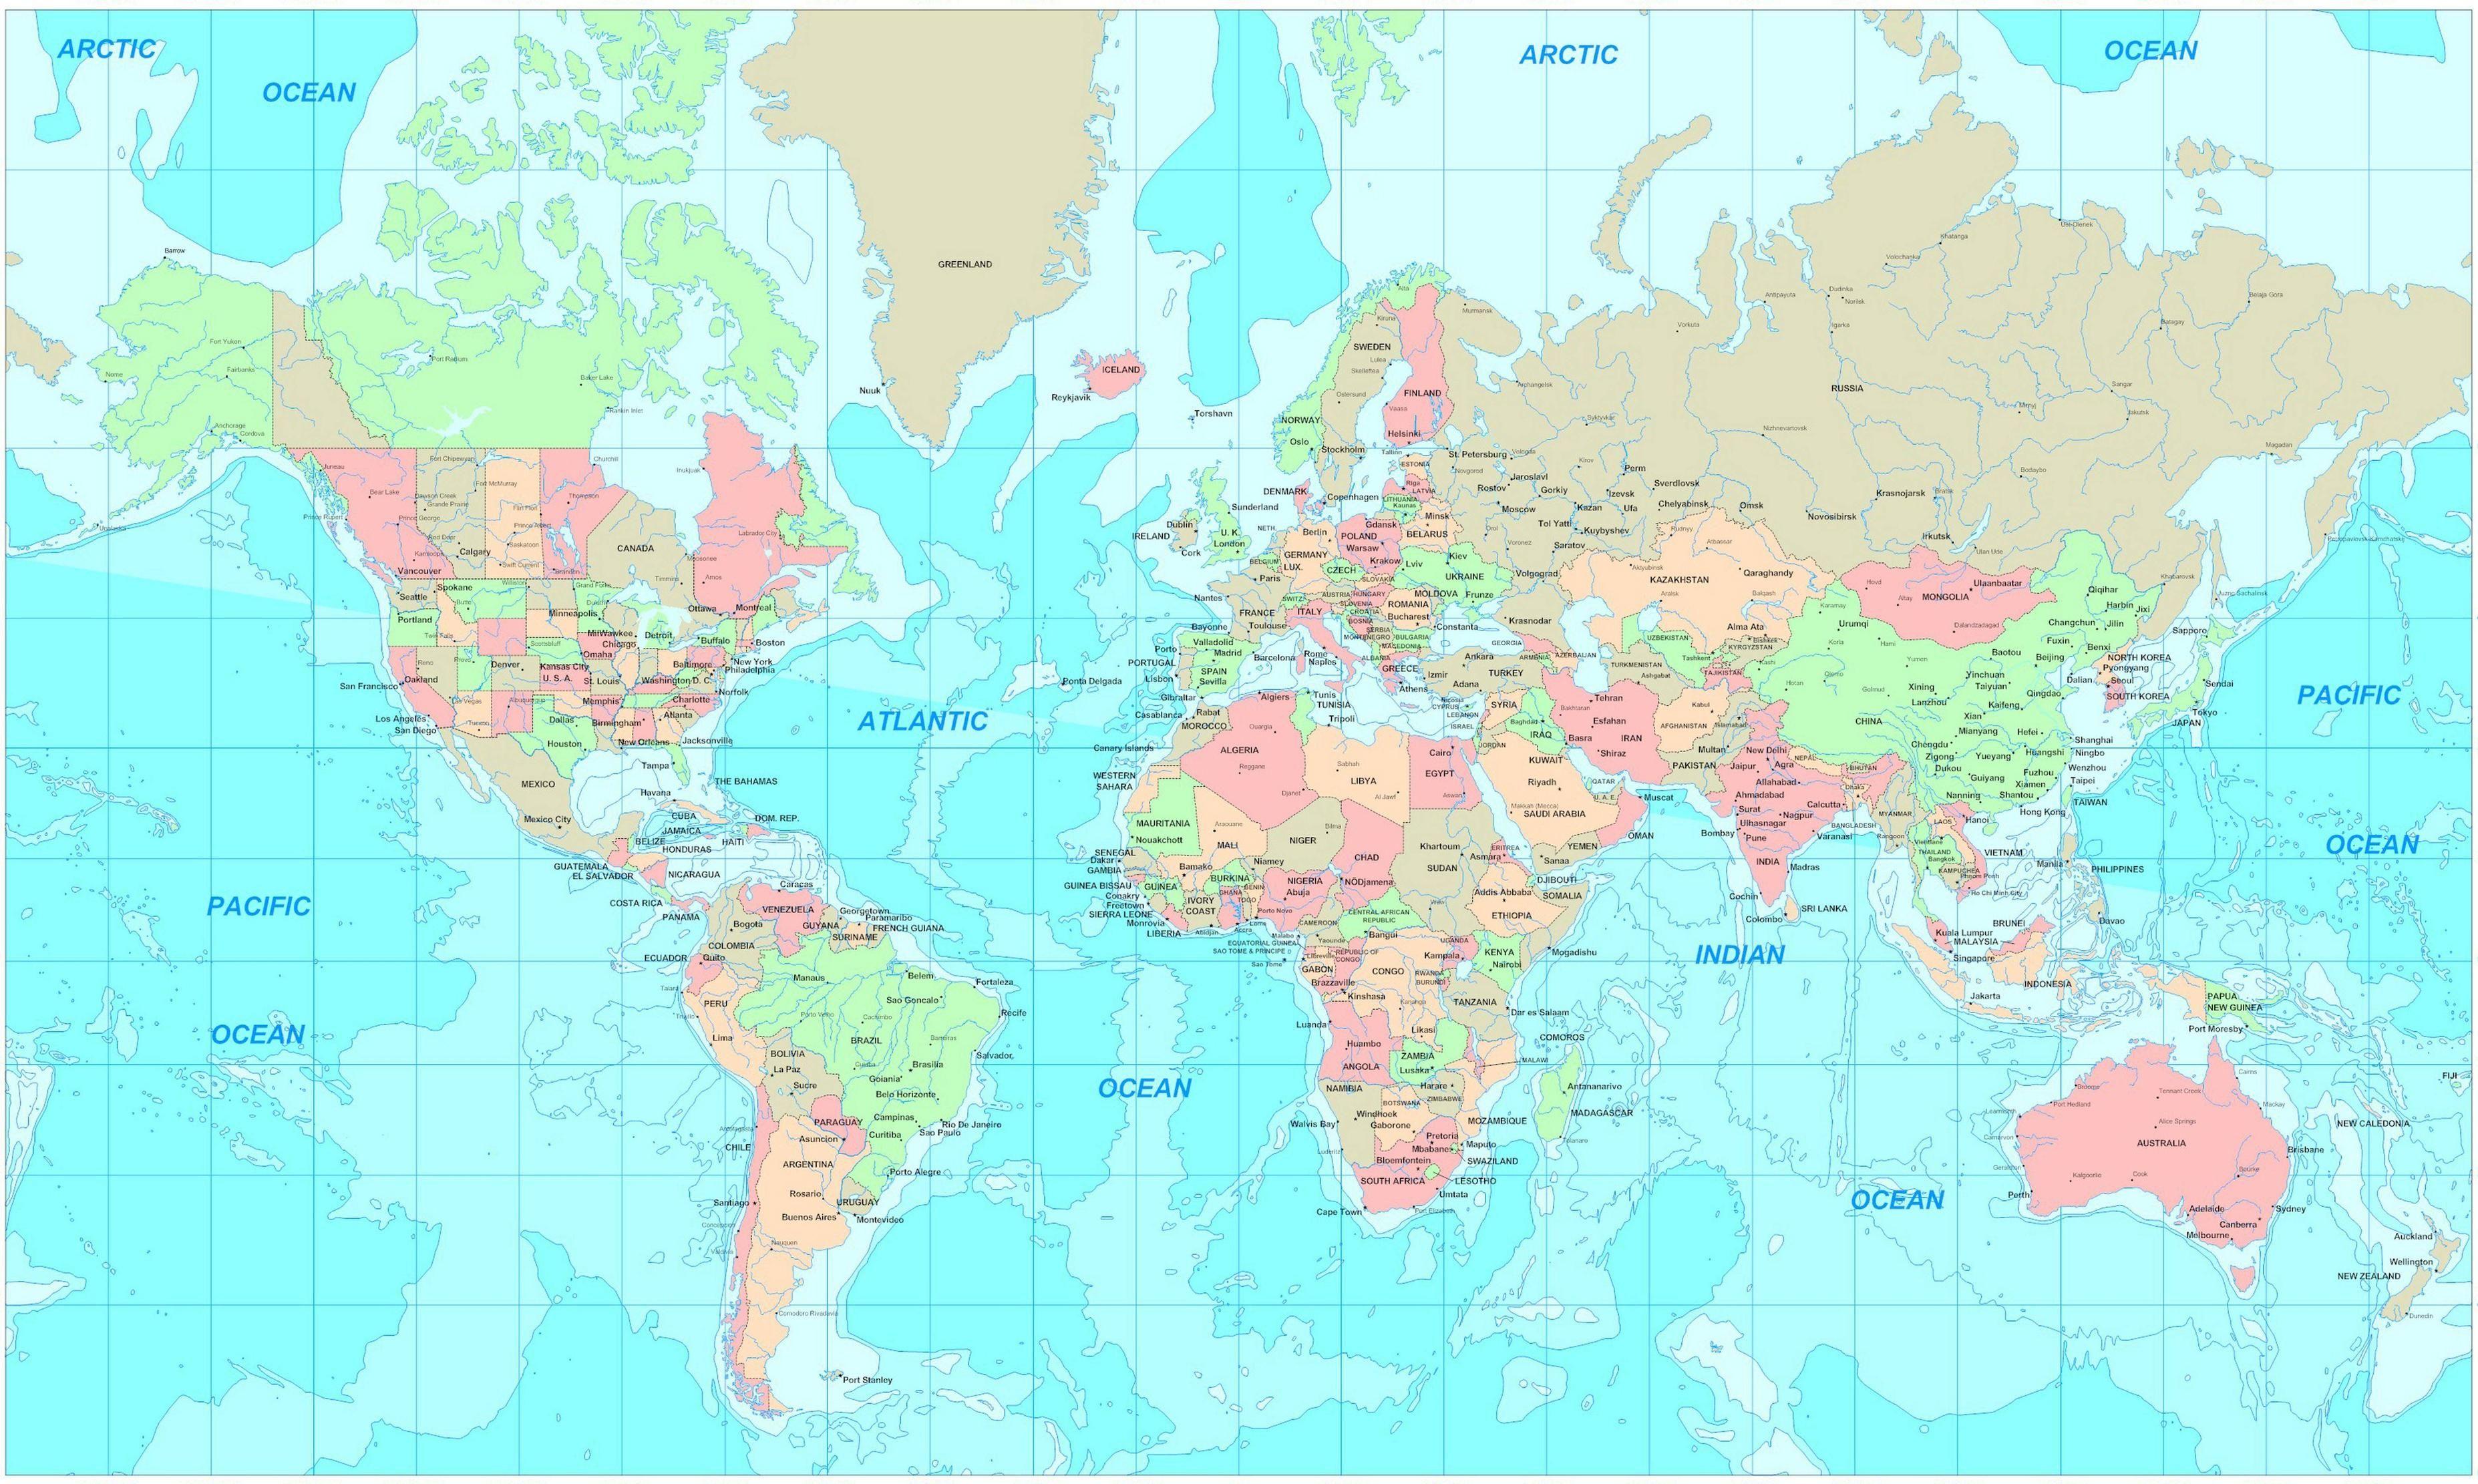 World Map Wallpaper High Resolution. World map wallpaper, Cool world map, New world map